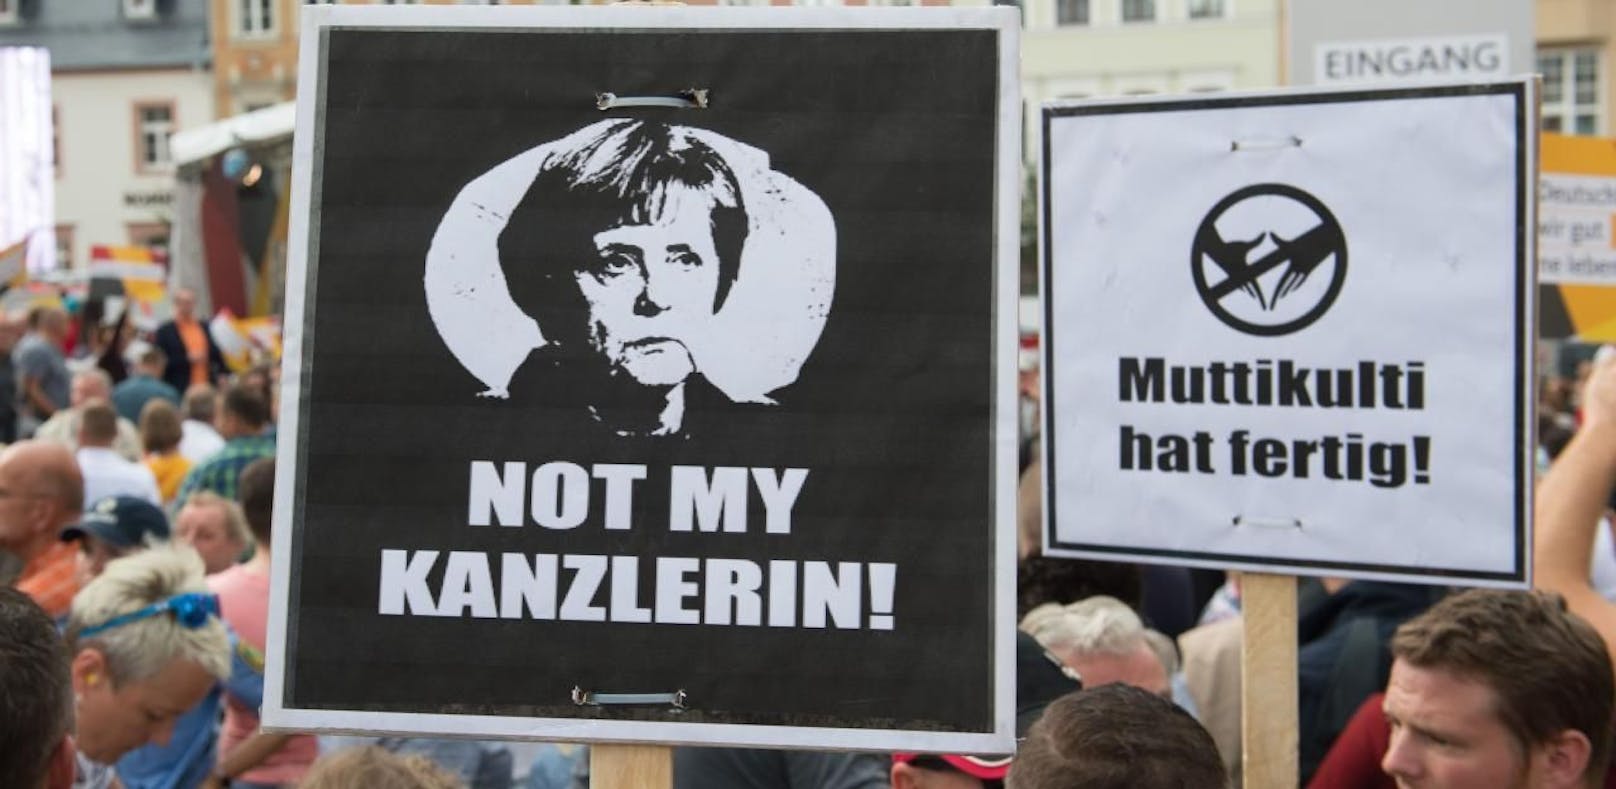 Merkel bei Rede ausgebuht und beschimpft